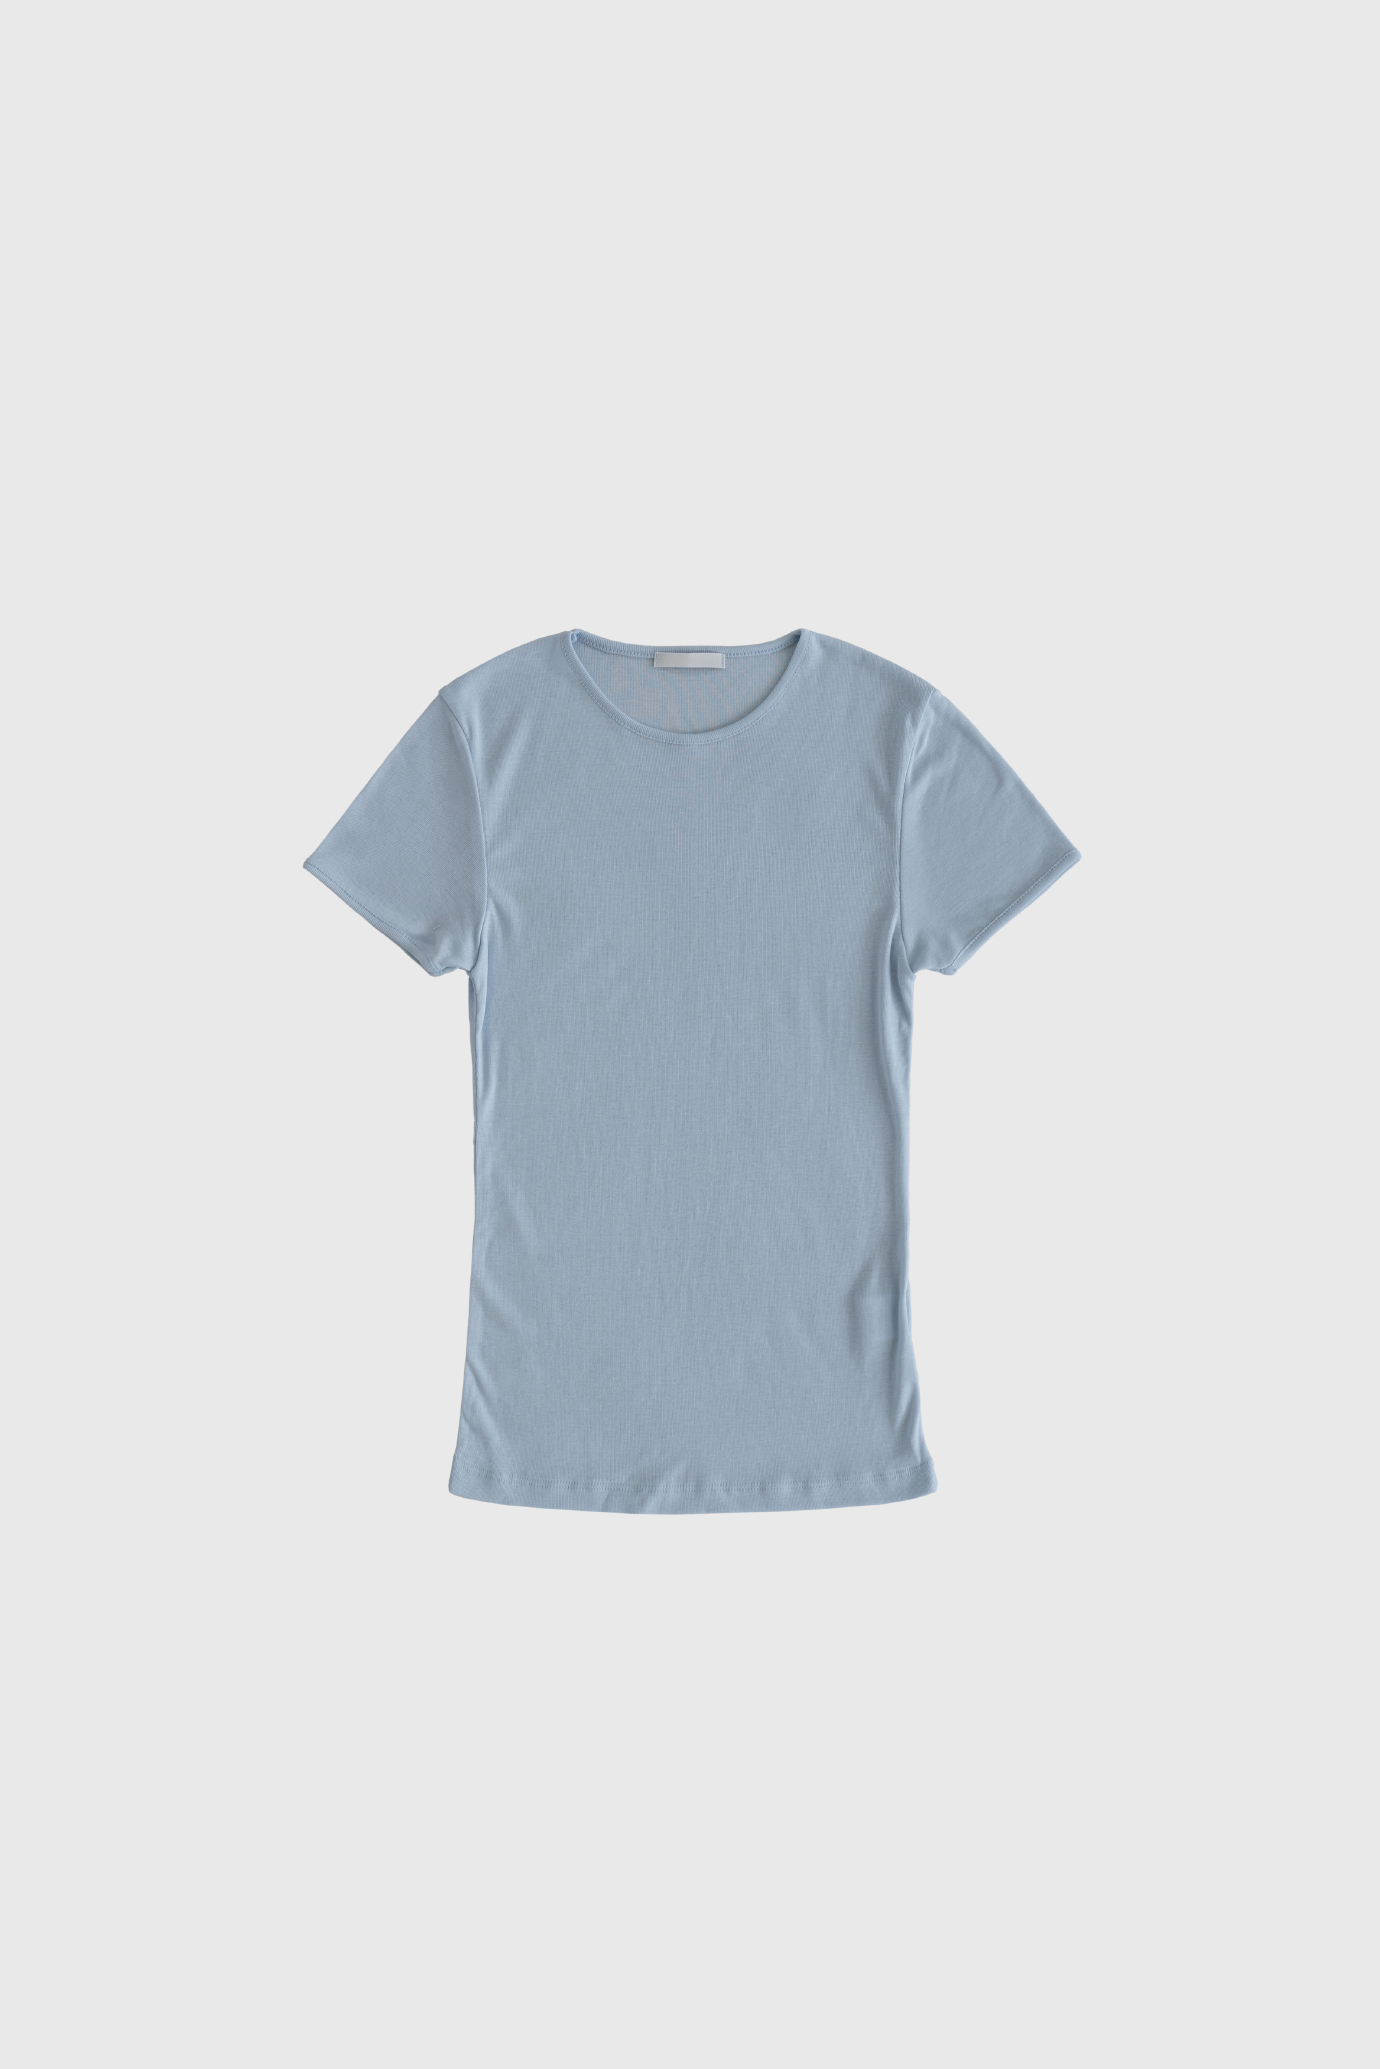 17756_Cotton Jersey T_Shirt